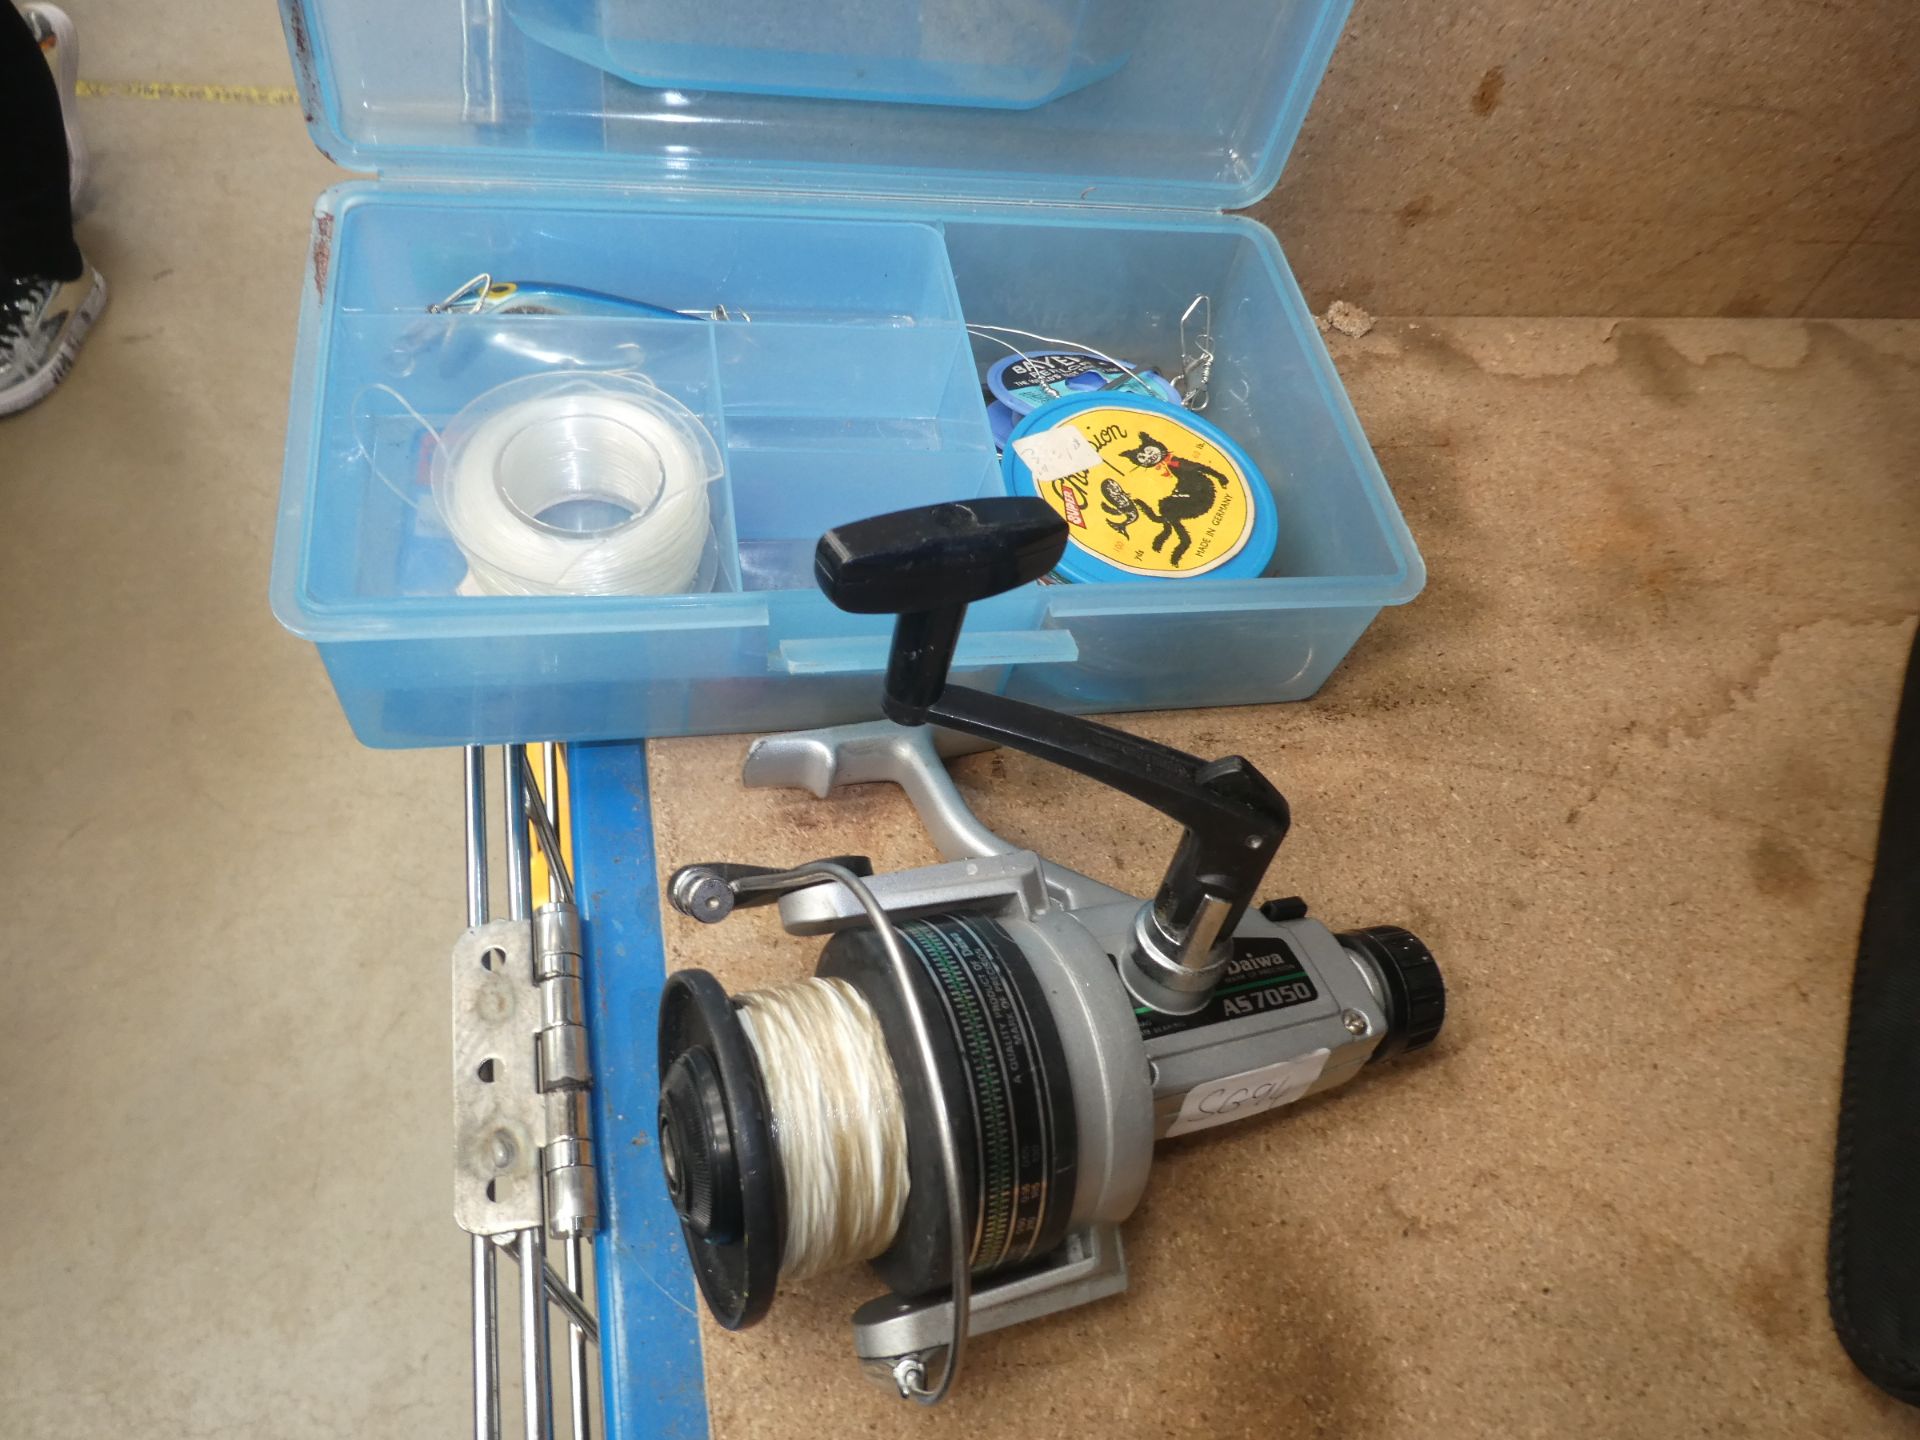 Daiwa fishing reel and a small box